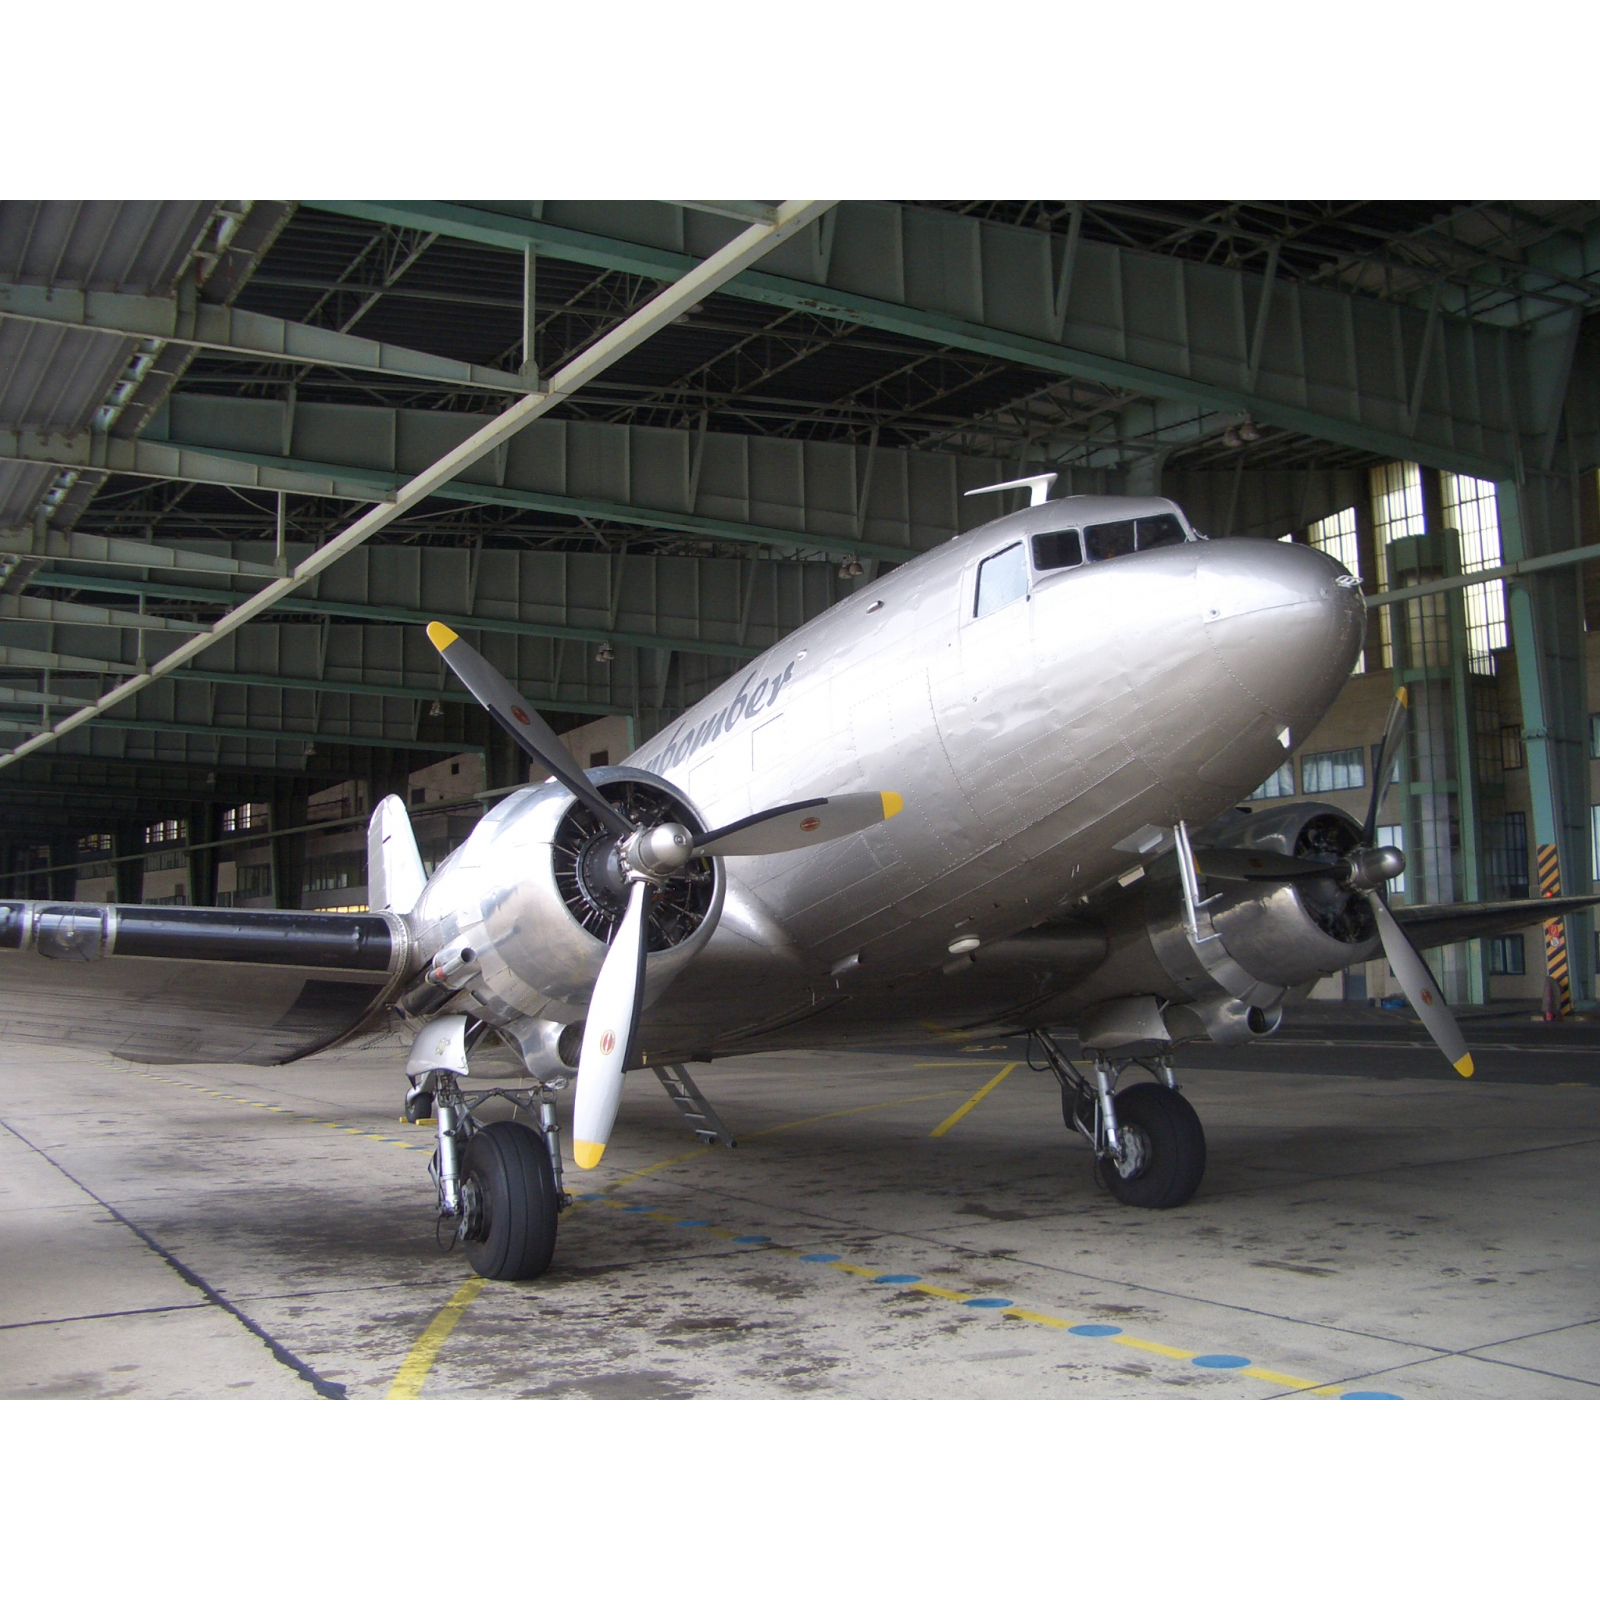 Aviationtag Douglas DC-3 - "Candy Bomber" - D-CXXX